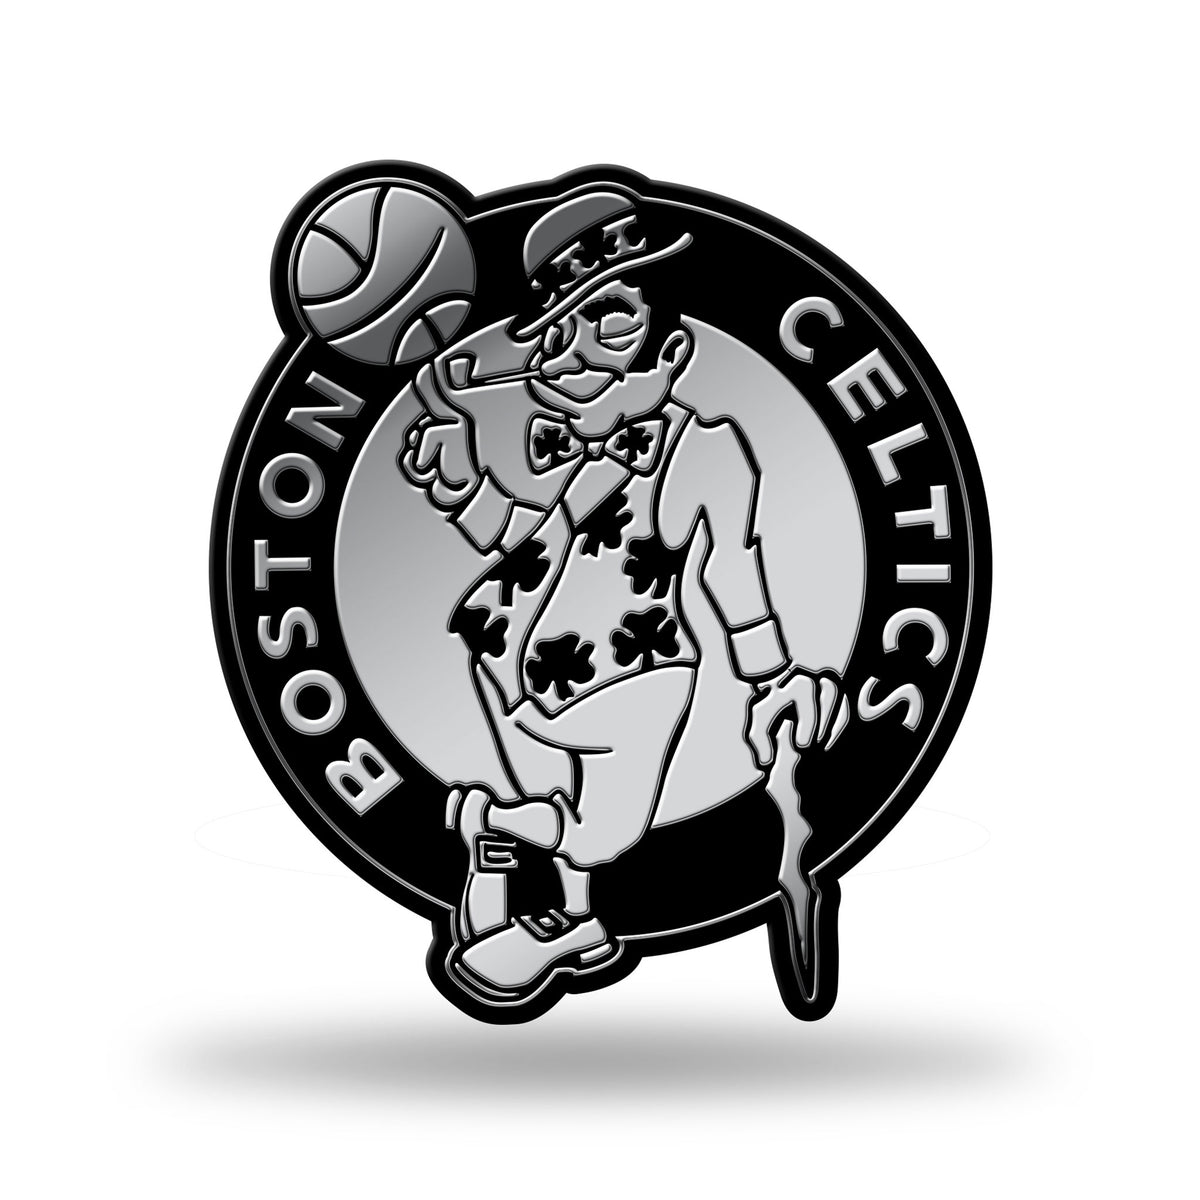 Boston Celtics Molded Chrome Car Emblem